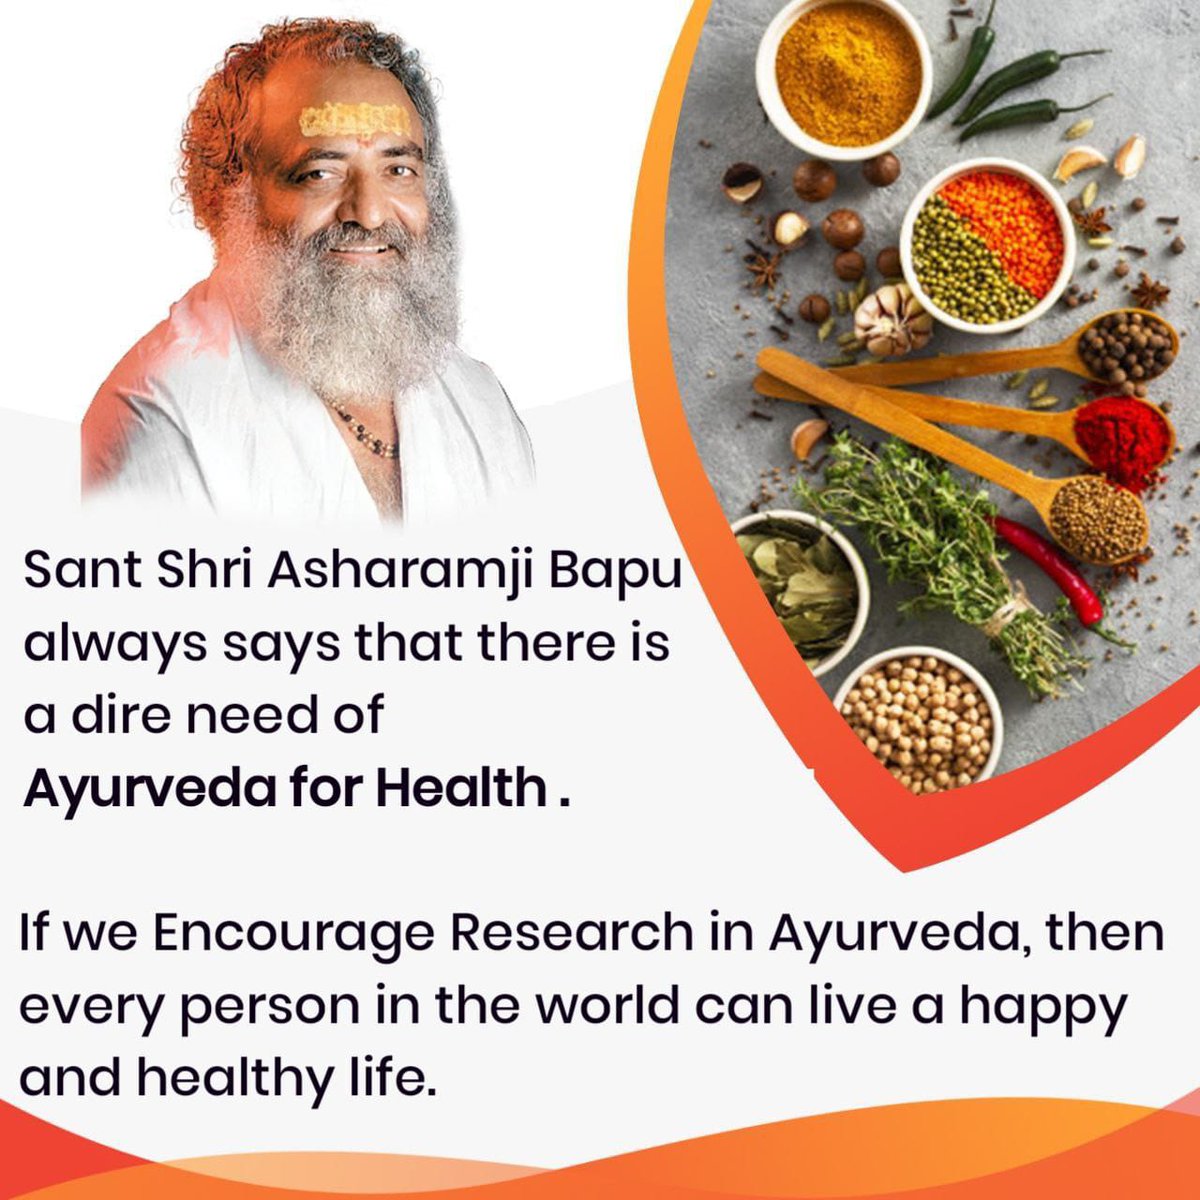 #AncientSecretsOfAyurveda
Discover health
Gift Of Nature
करेले शुगर वालों के लिए वरदान है। सुबह आधा घंटा तस्ले में पैरों से मसलने से जब तक मुंह में करेले का स्वाद न आ जाए करने से शुगर का जड़ से नाश होता है
Sant Shri Asharamji Bapu 
youtube.com/playlist?list=…